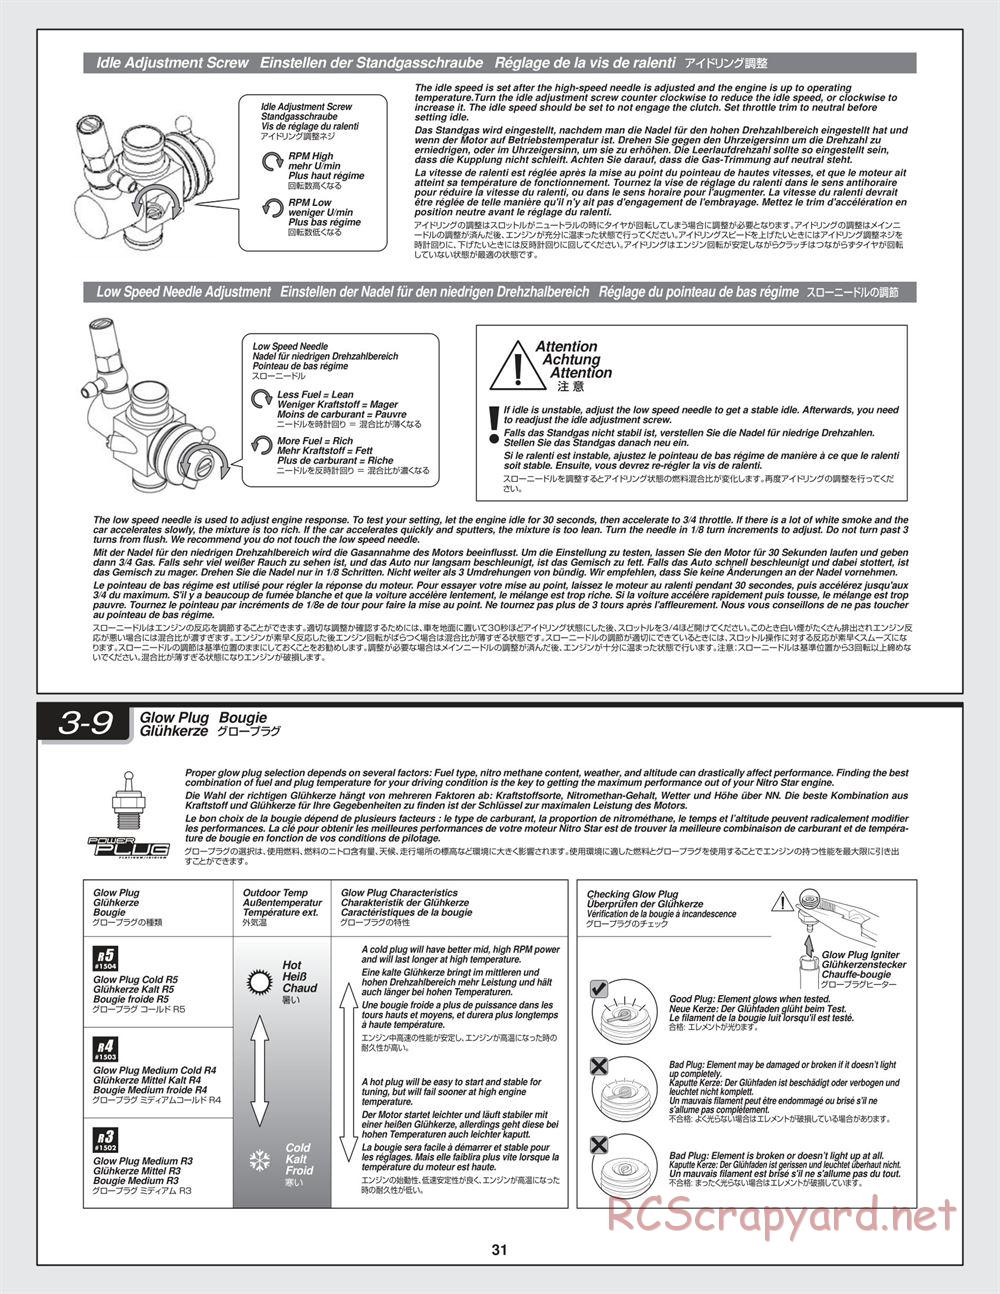 HPI - Bullet ST 3.0 - Manual - Page 31